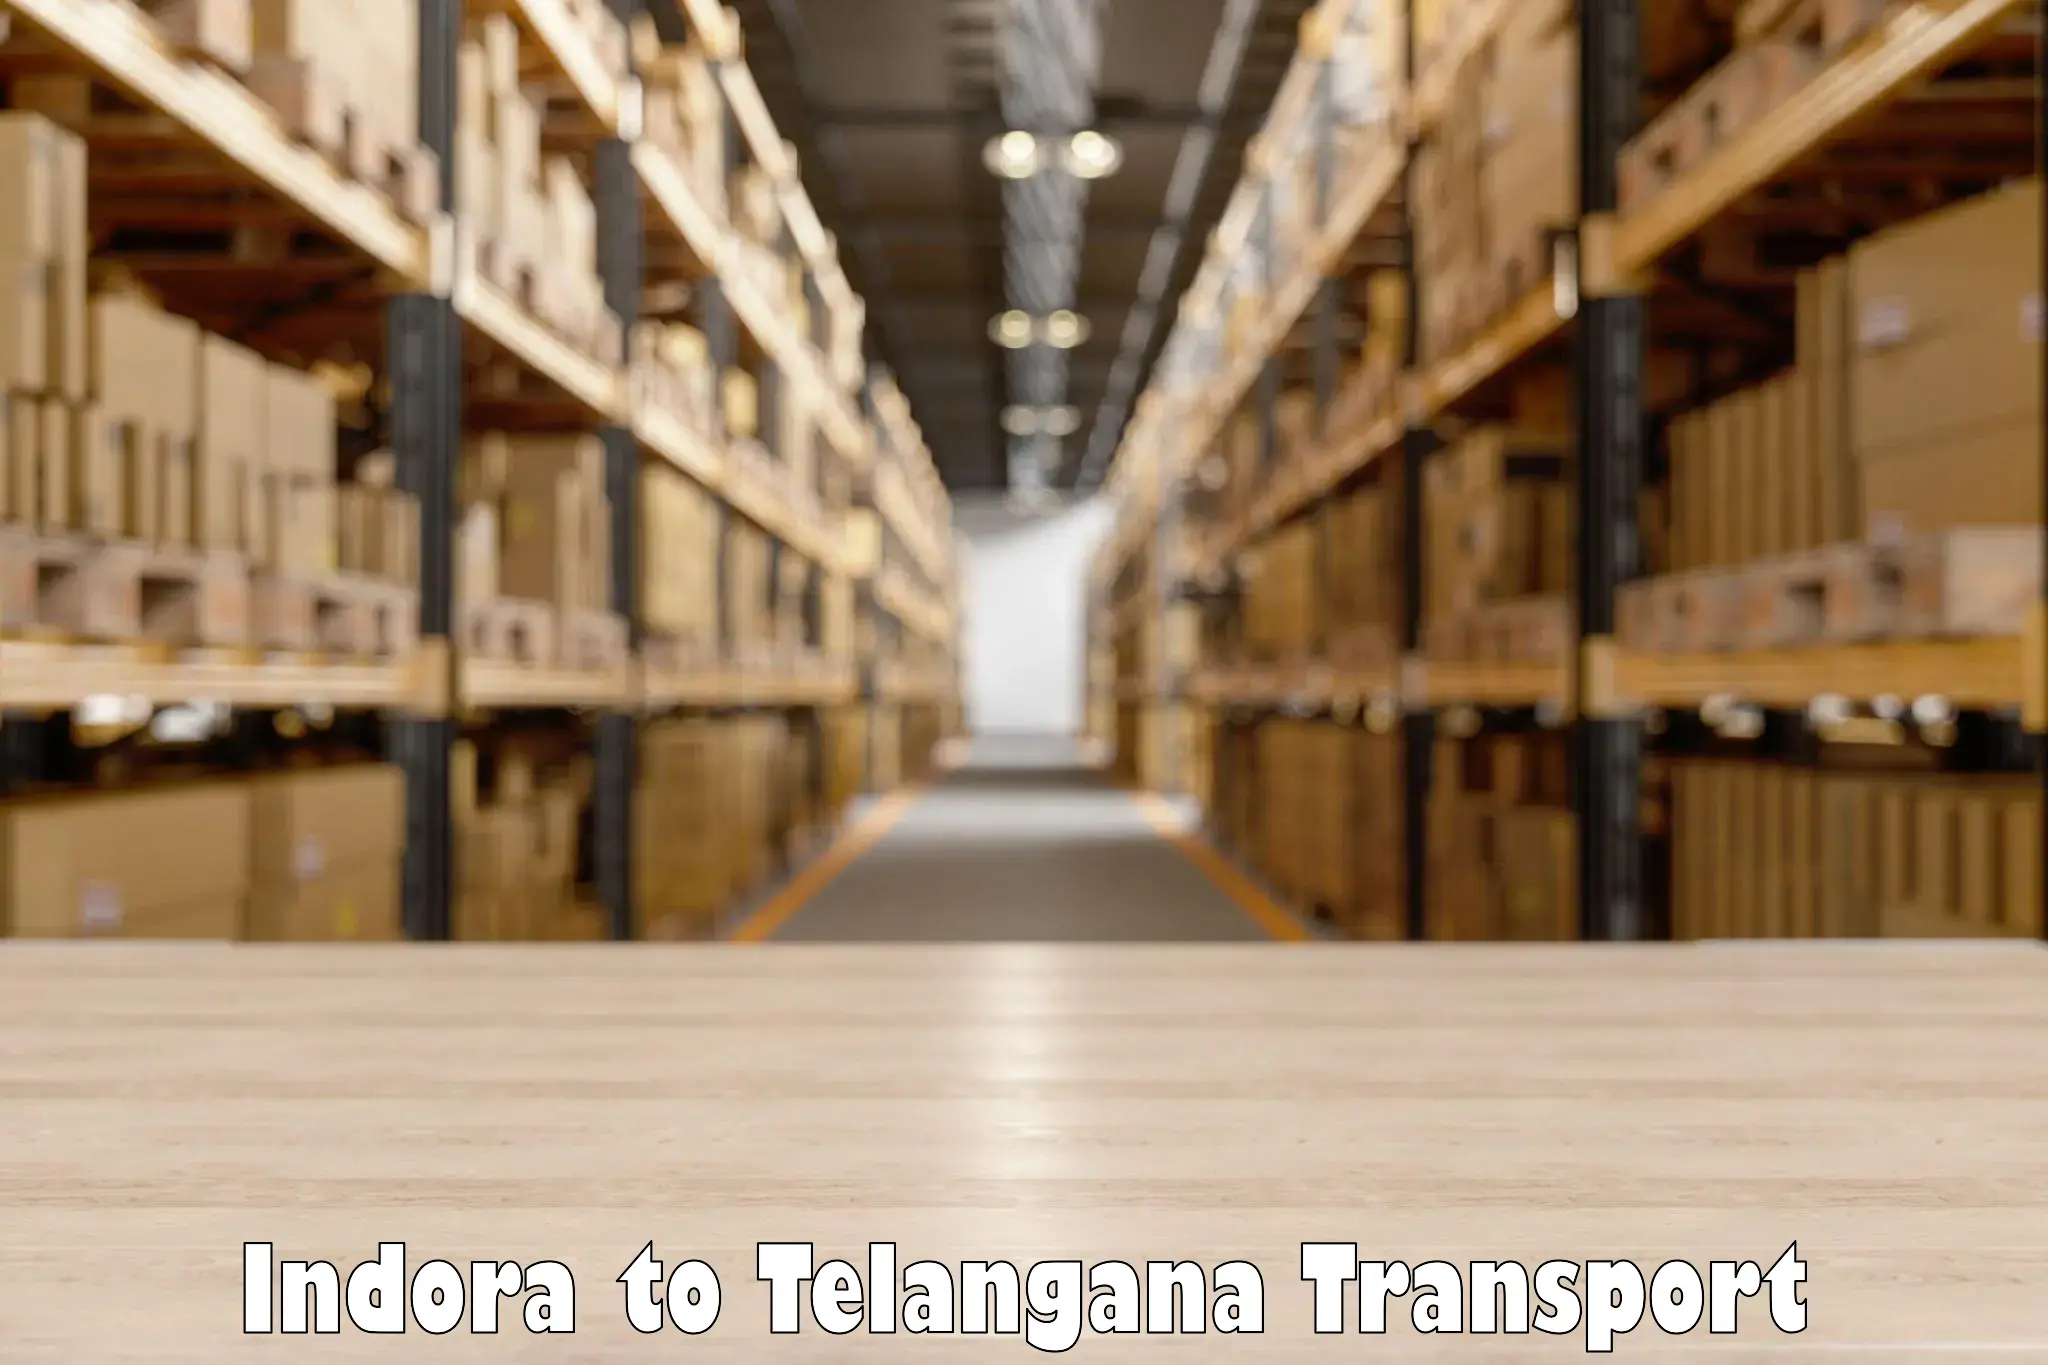 Transport in sharing Indora to Kalwakurthy